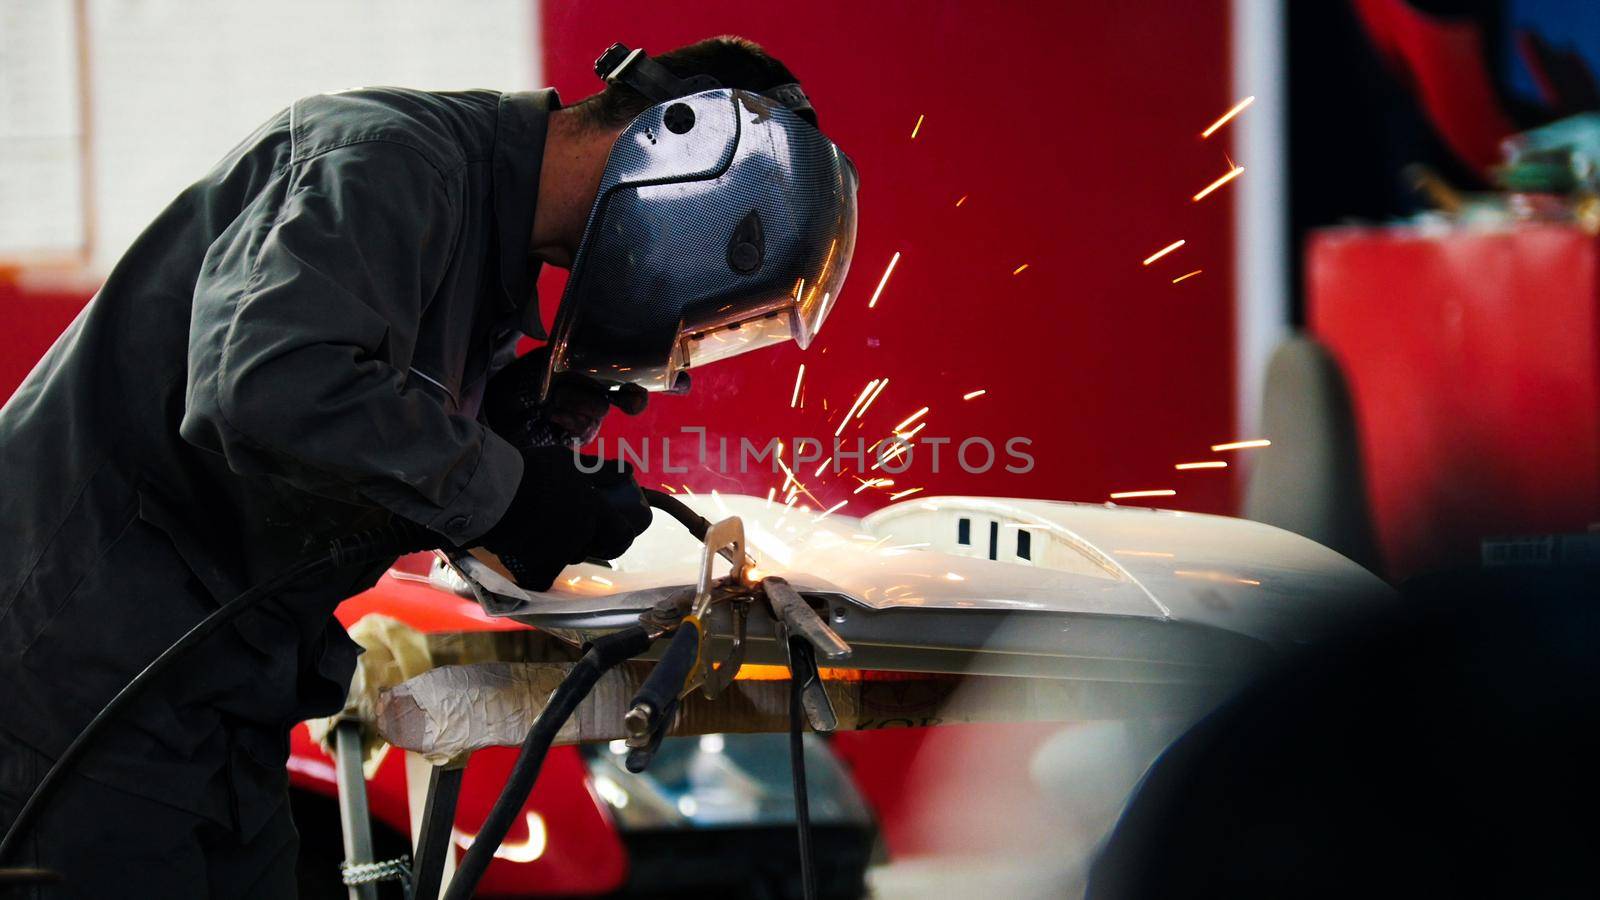 Welding industrial: worker in helmet repair detail in car auto service by Studia72